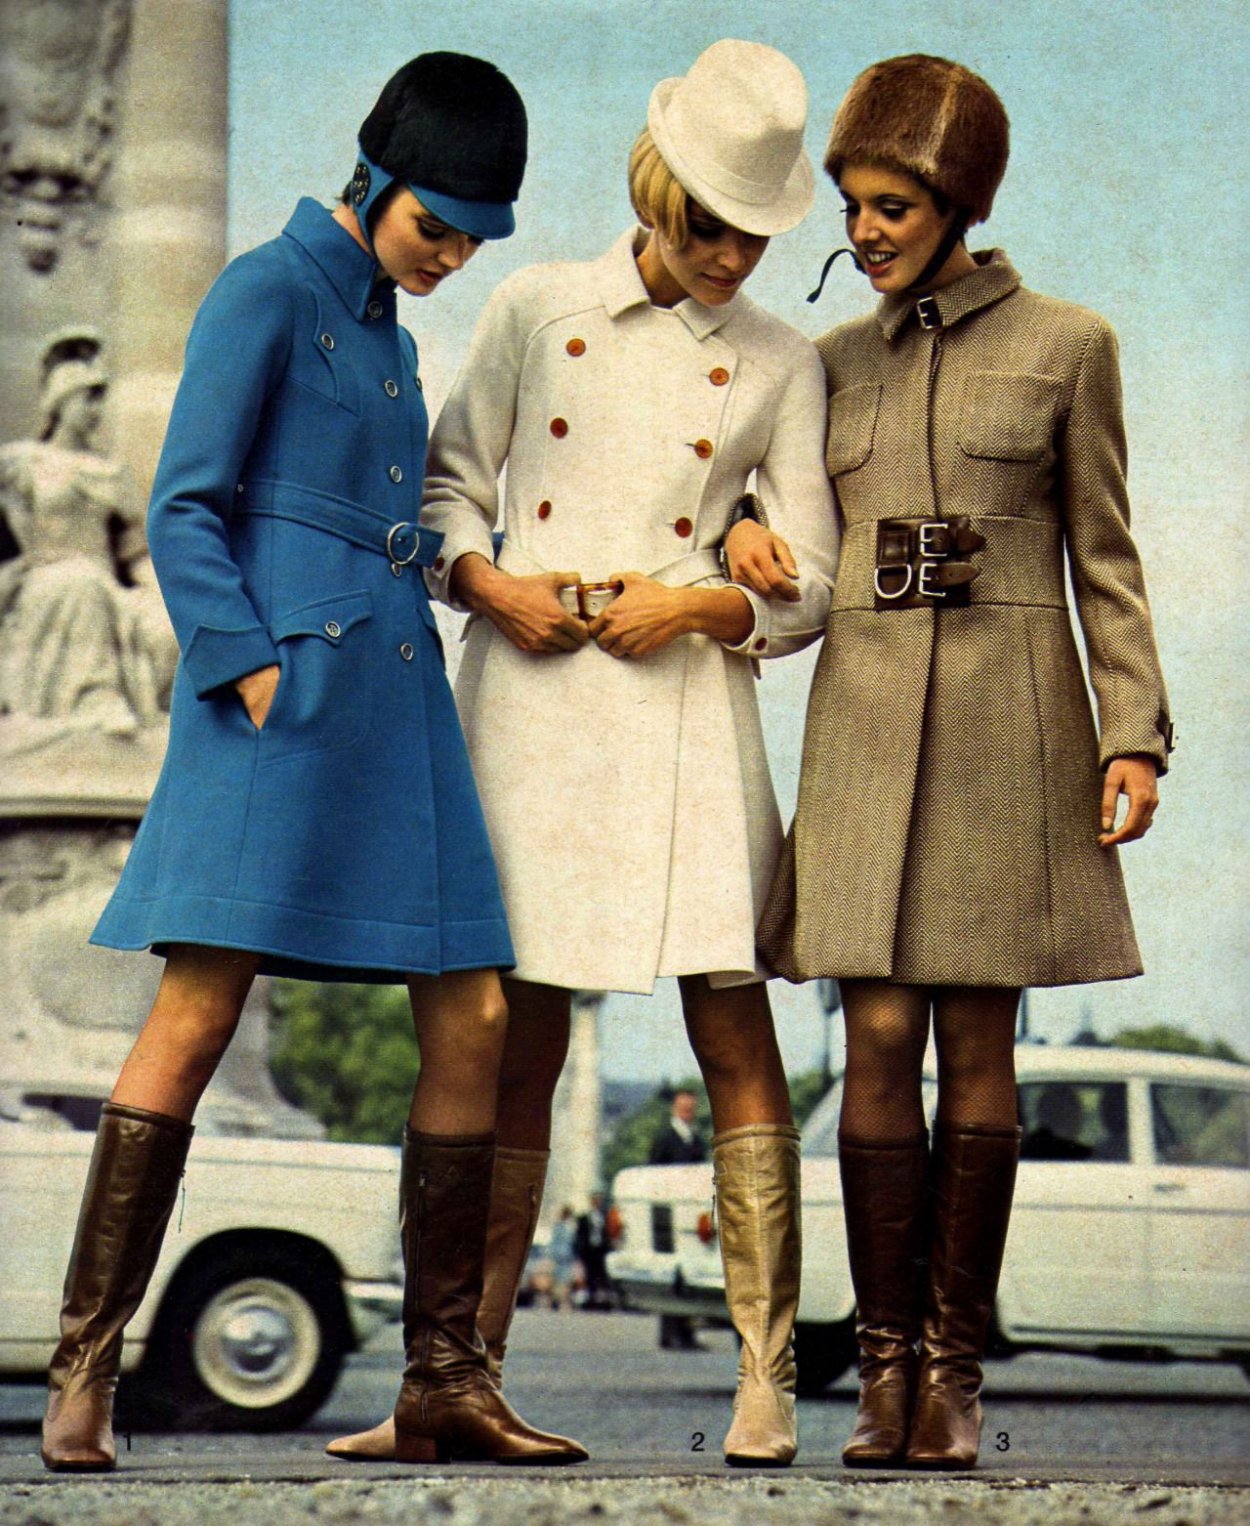 Пальто в стиле 60 годов